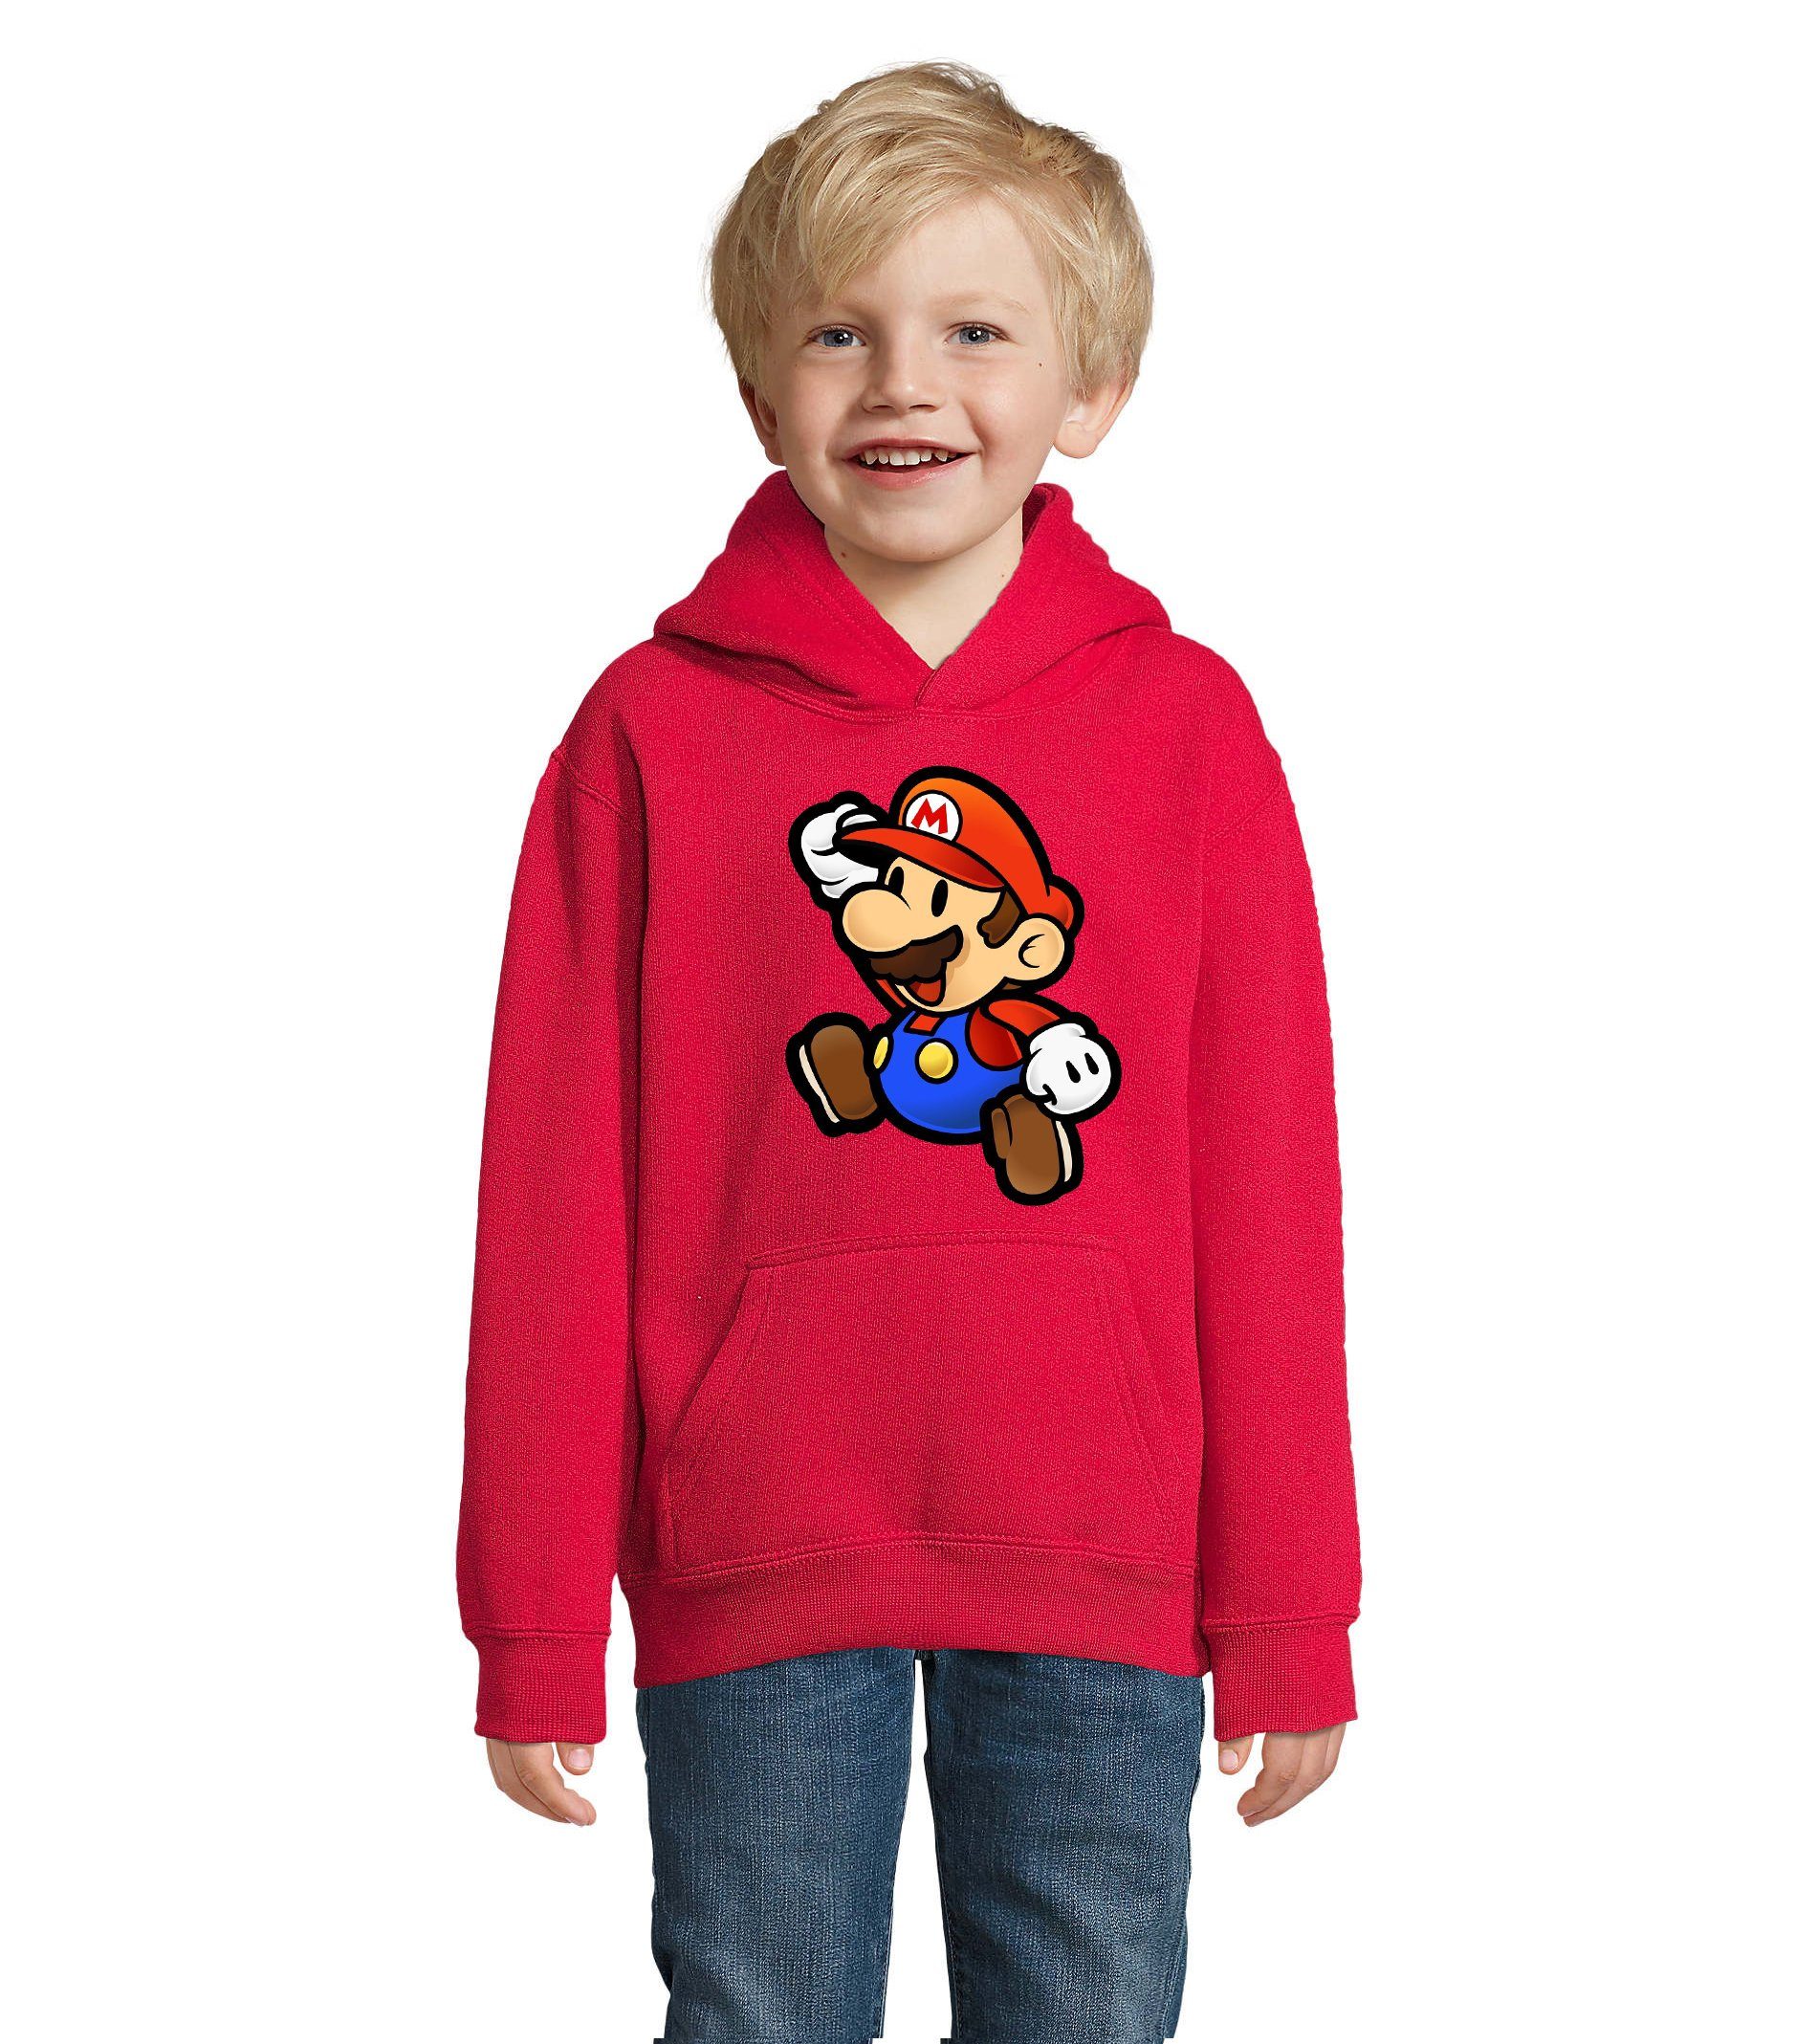 Blondie & Brownie Hoodie Kinder Jungen & Mädchen Mario Nintendo Gaming Luigi Yoshi Super mit Kapuze Rot